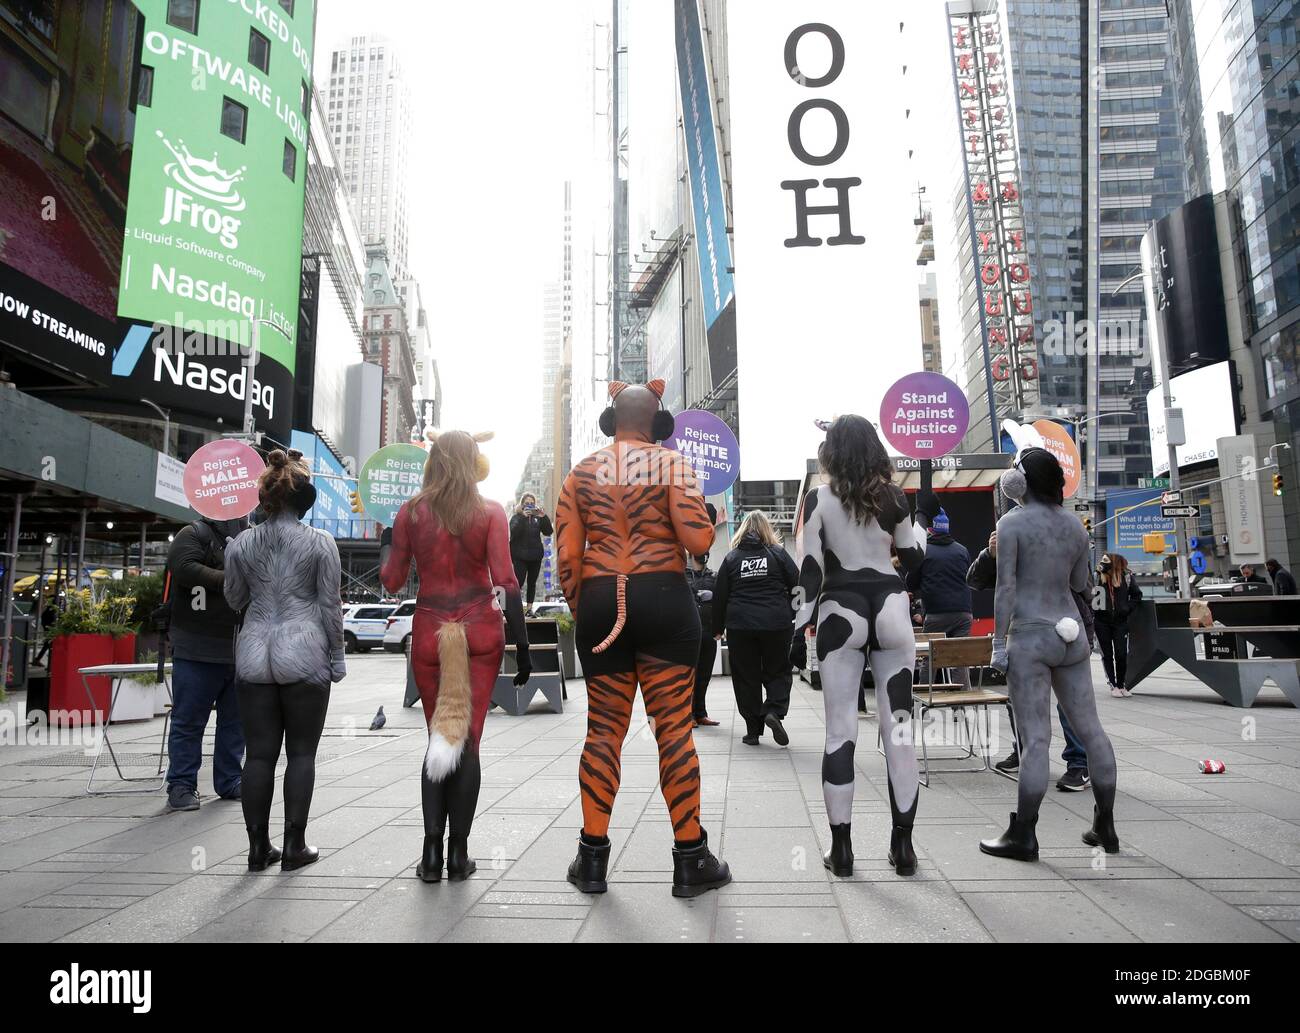 New York, Stati Uniti. 8 dicembre 2020. I manifestanti DI PETA che indossano la vernice del corpo per sembrare animali tengono in su i segni in Times Square a New York City martedì 8 dicembre 2020. I sostenitori DI PETA dipinsero come una mucca, un coniglio, una volpe, un'oca e una tigre riuniti in Times Square tenevano segni che annunciavano: "Rifiuto della supremazia BIANCA", "rifiuto della supremazia ETEROSESSUALE", "rifiuto della supremazia UMANA" e "rifiuto della supremazia MASCHILE". Foto di John Angelillo/UPI Credit: UPI/Alamy Live News Foto Stock